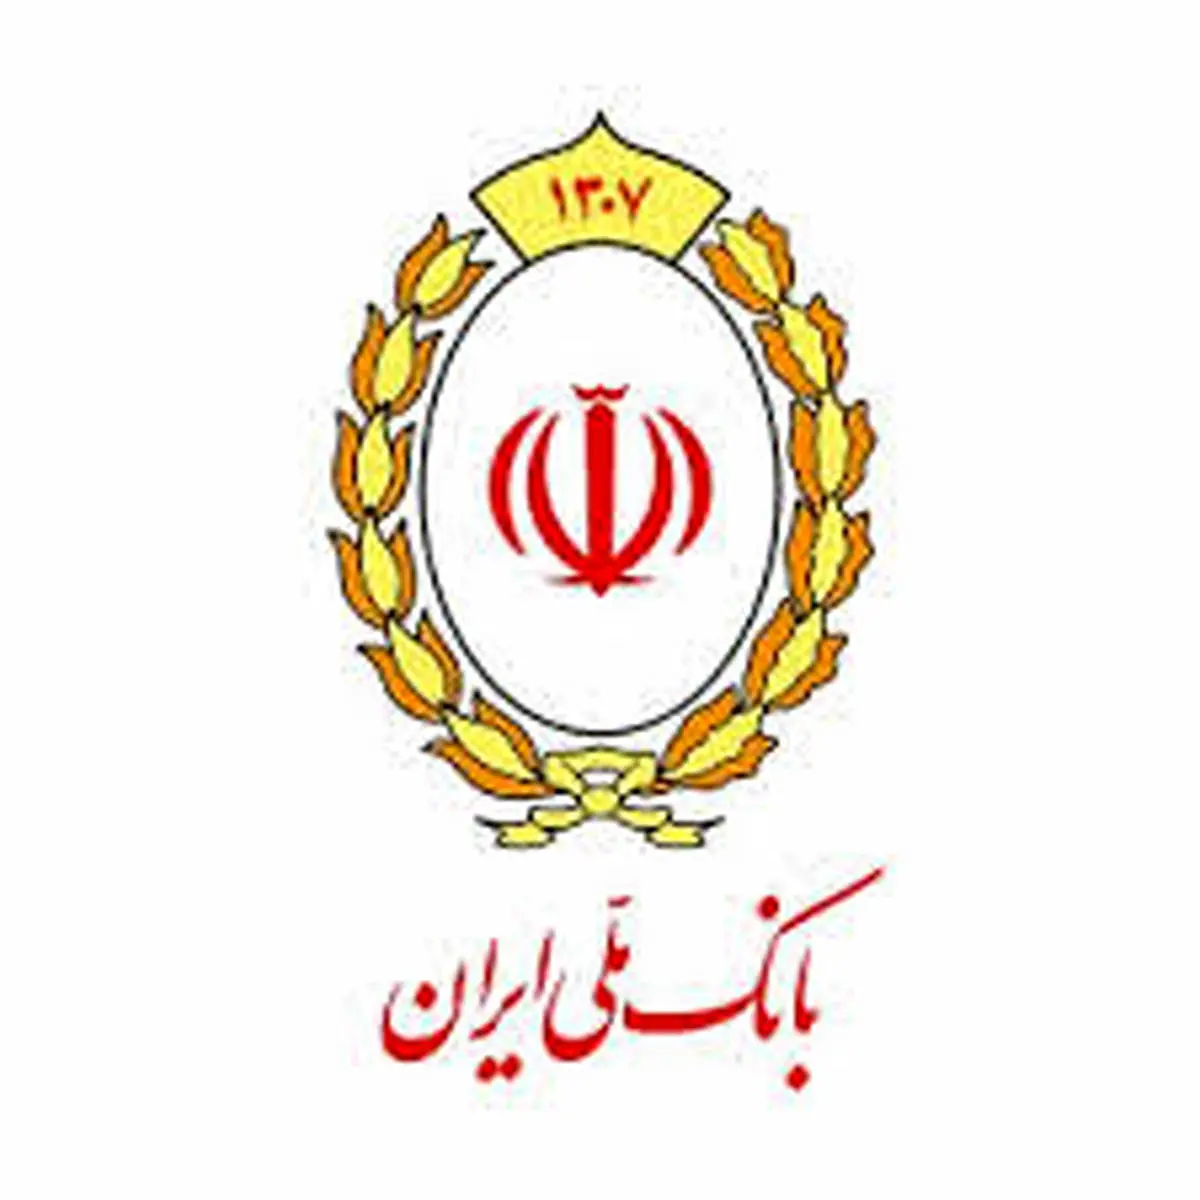 یک تیر دو نشان بانک ملی ایران
